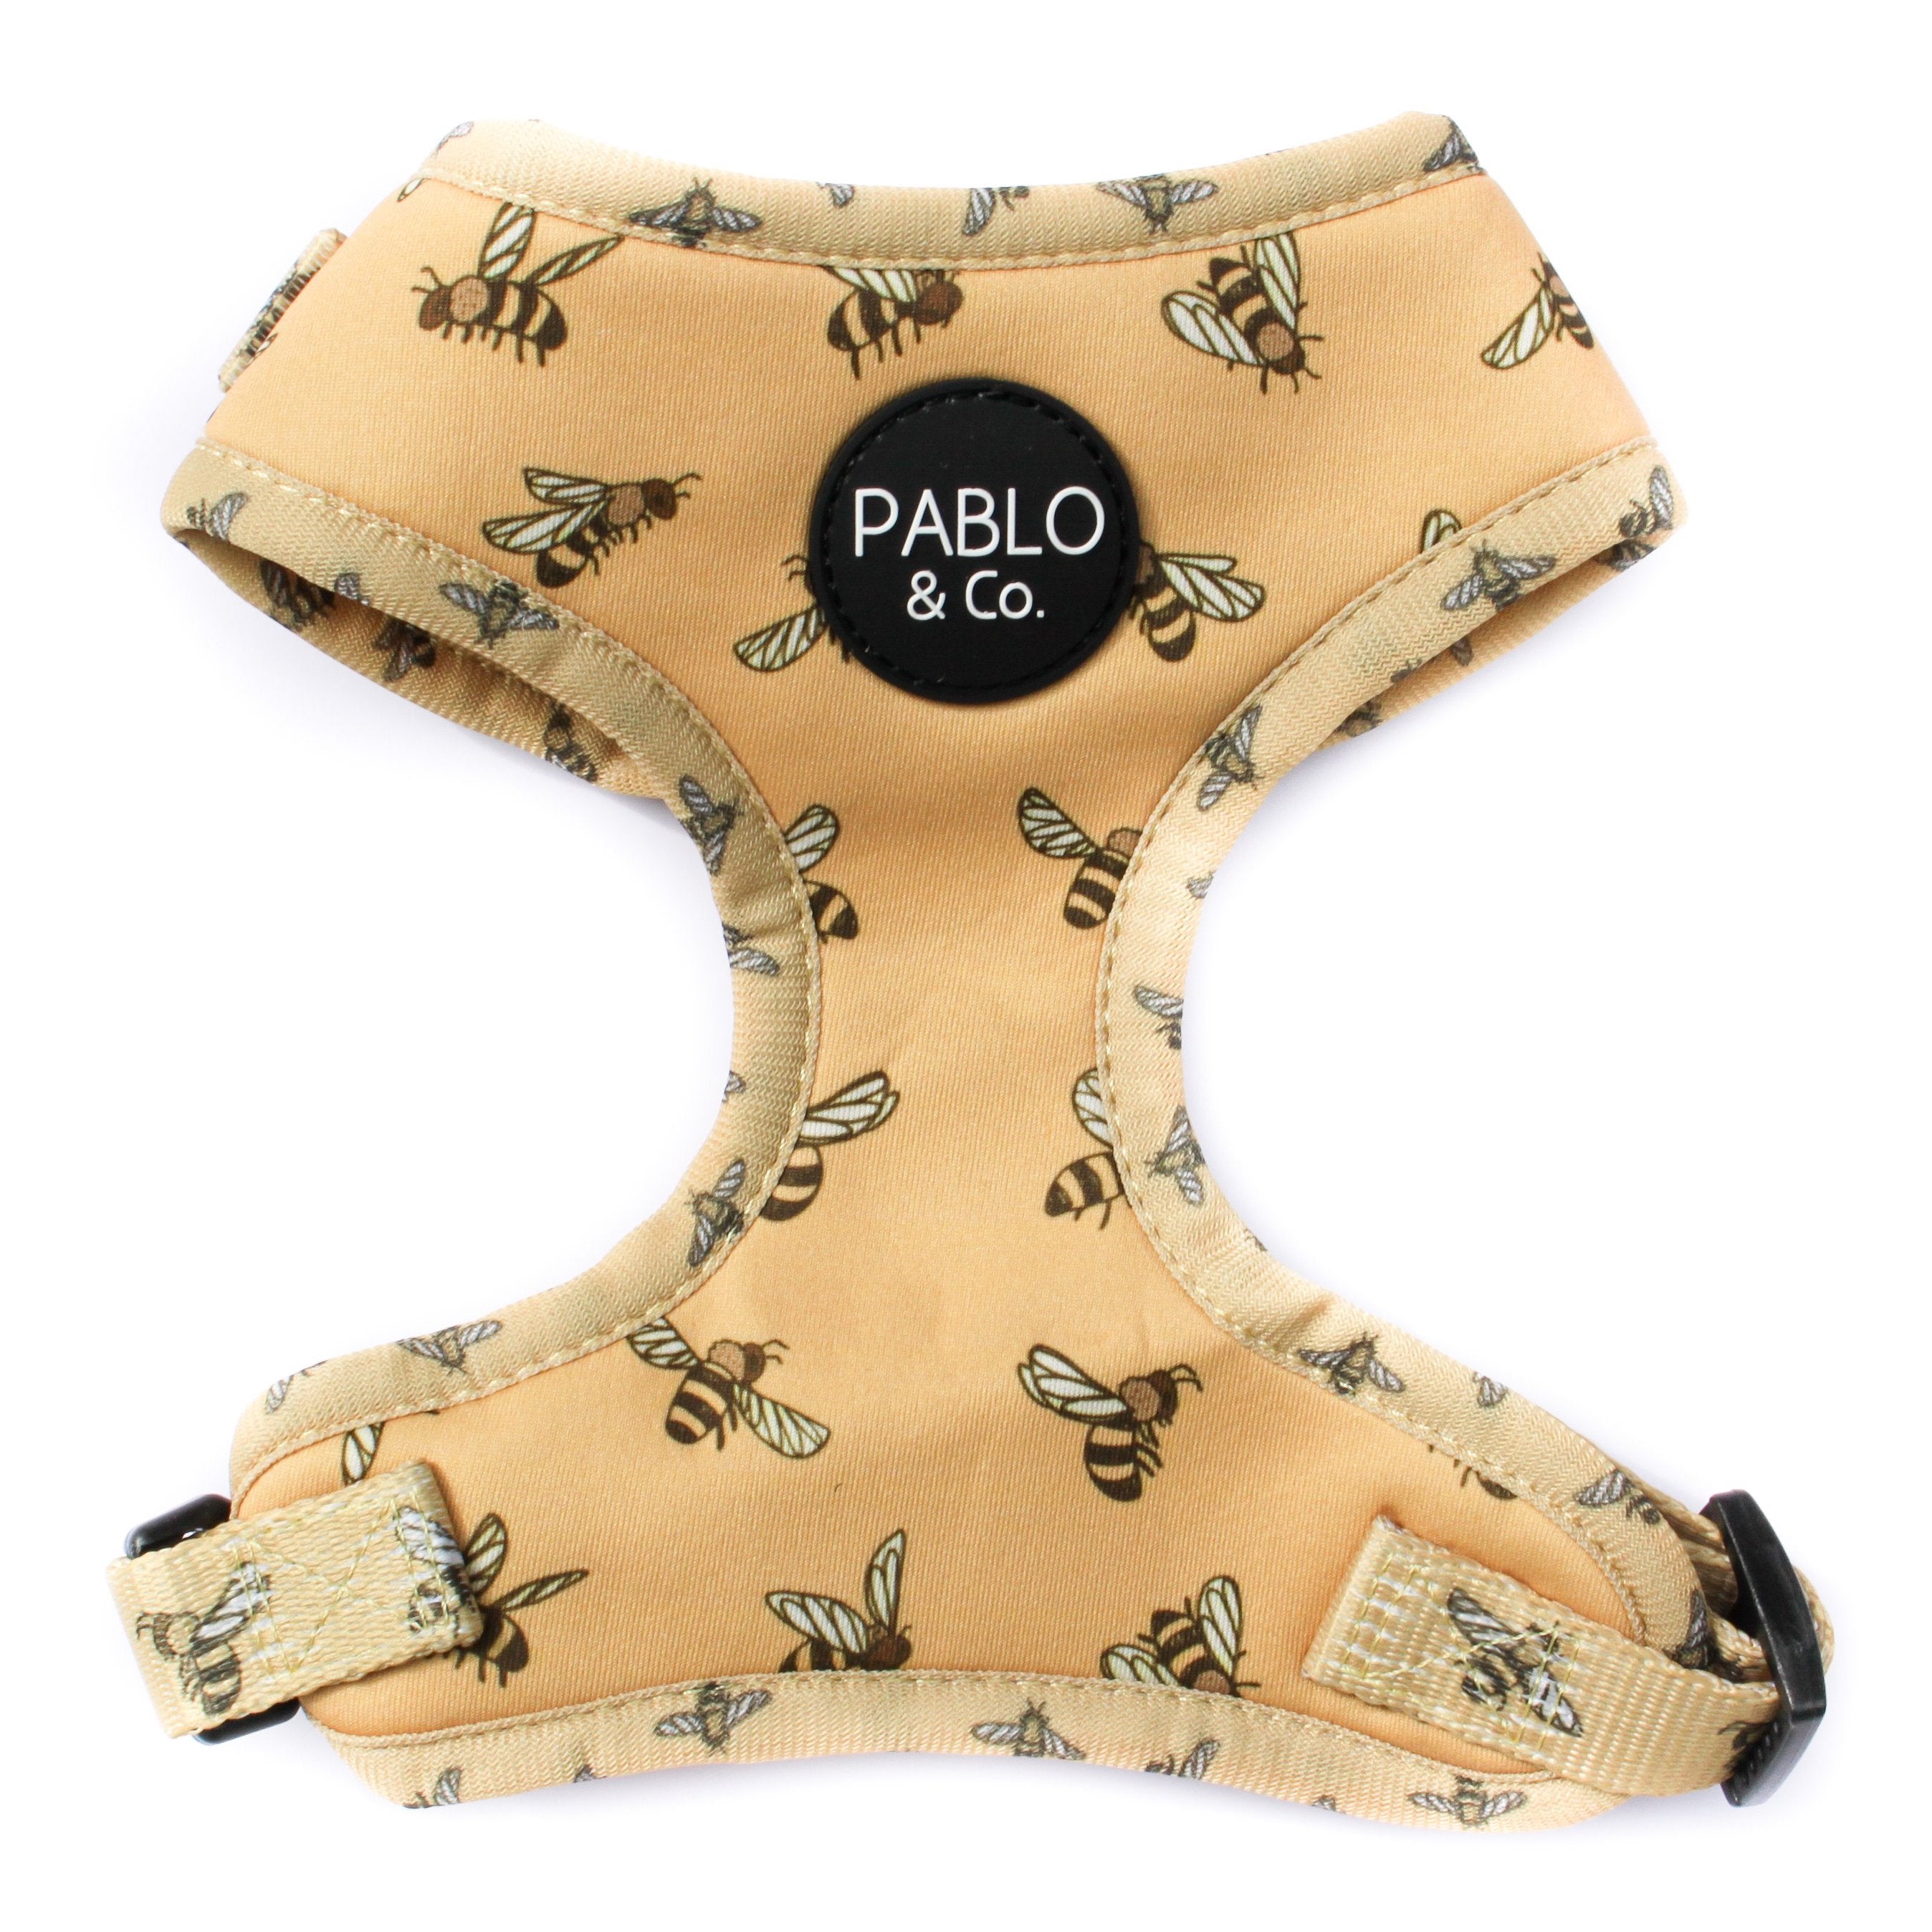 PABLO & CO - Bumblebee Adjustable Dog Harness